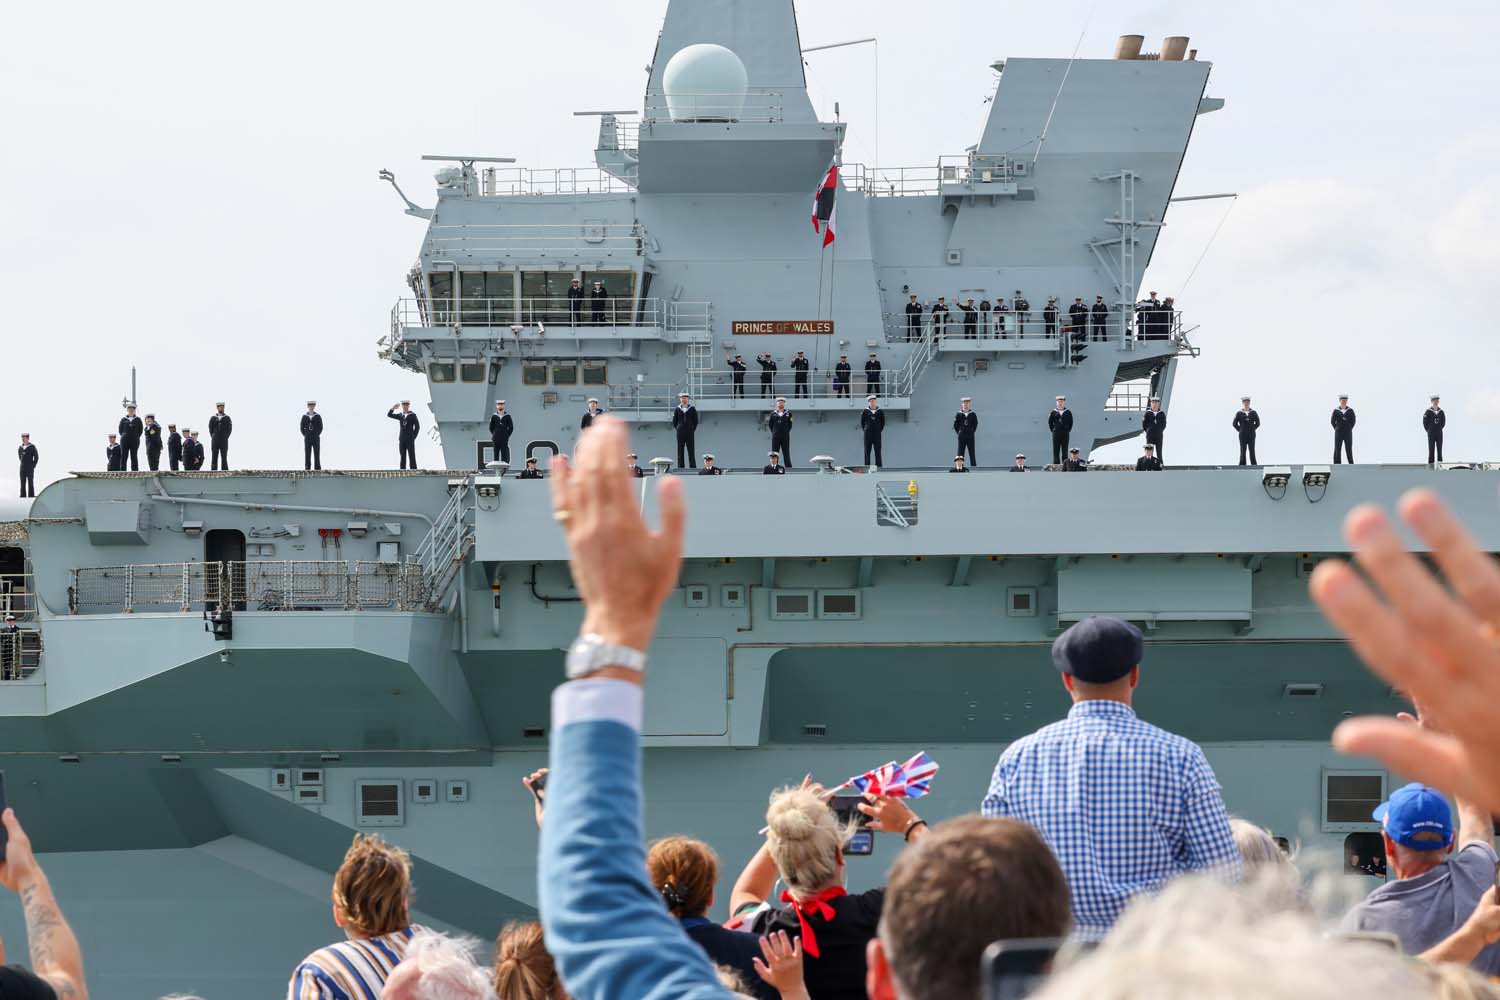 El HMS Prince of Wales, valorado en 3.850 millones de dólares, ha zarpado rumbo a EE.UU. - El mayor portaaviones británico recibirá cazas F-35B, aviones convertibles MV-22 y drones